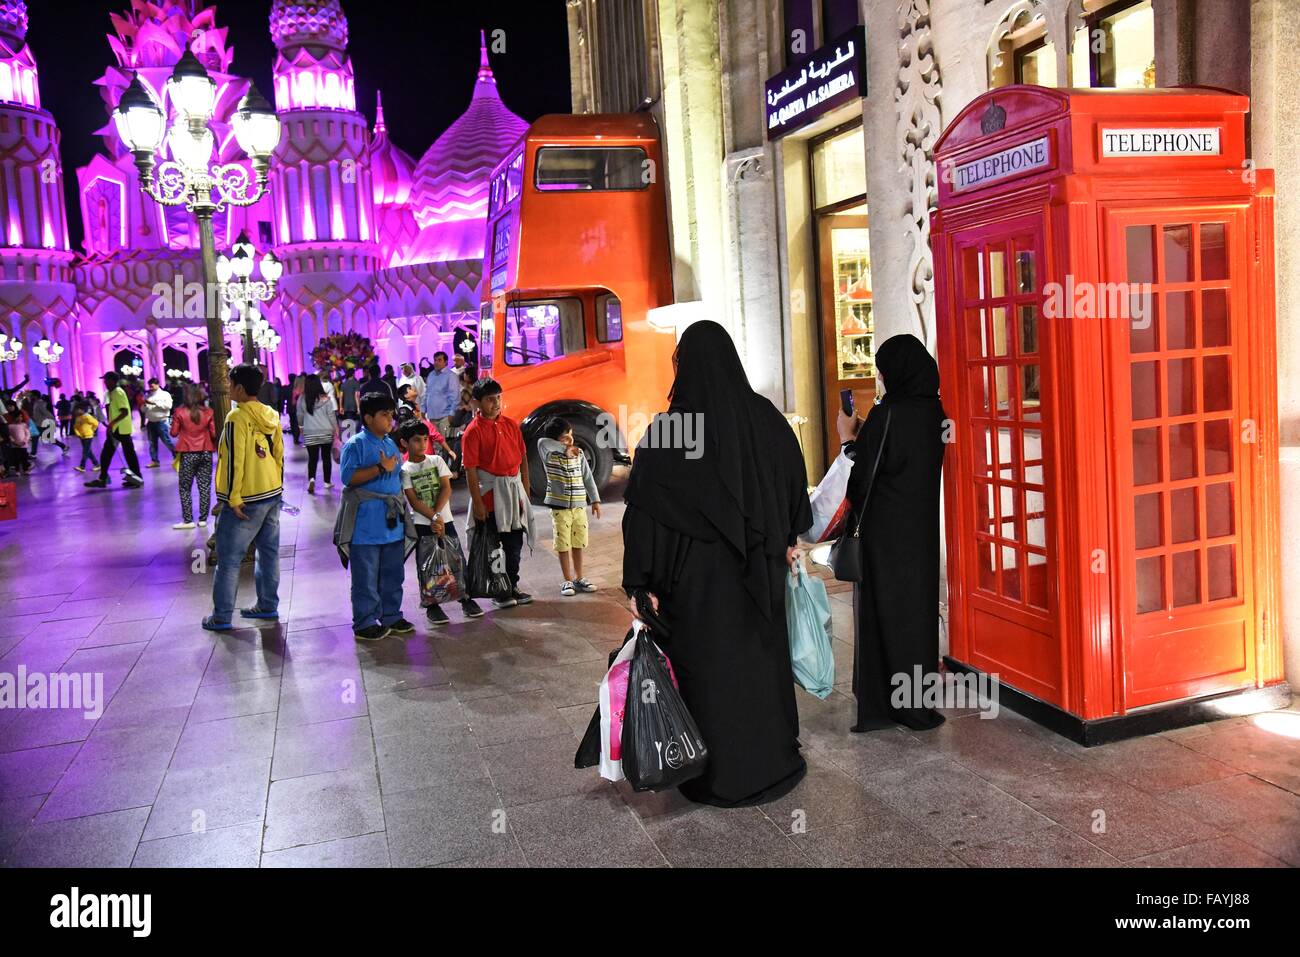 Global Village Dubailand, Dubai, Vereinigte Arabische Emirate behauptet, das weltweit größte Tourismus-, Freizeit- und Unterhaltungsmöglichkeiten Projekt sein. Stockfoto